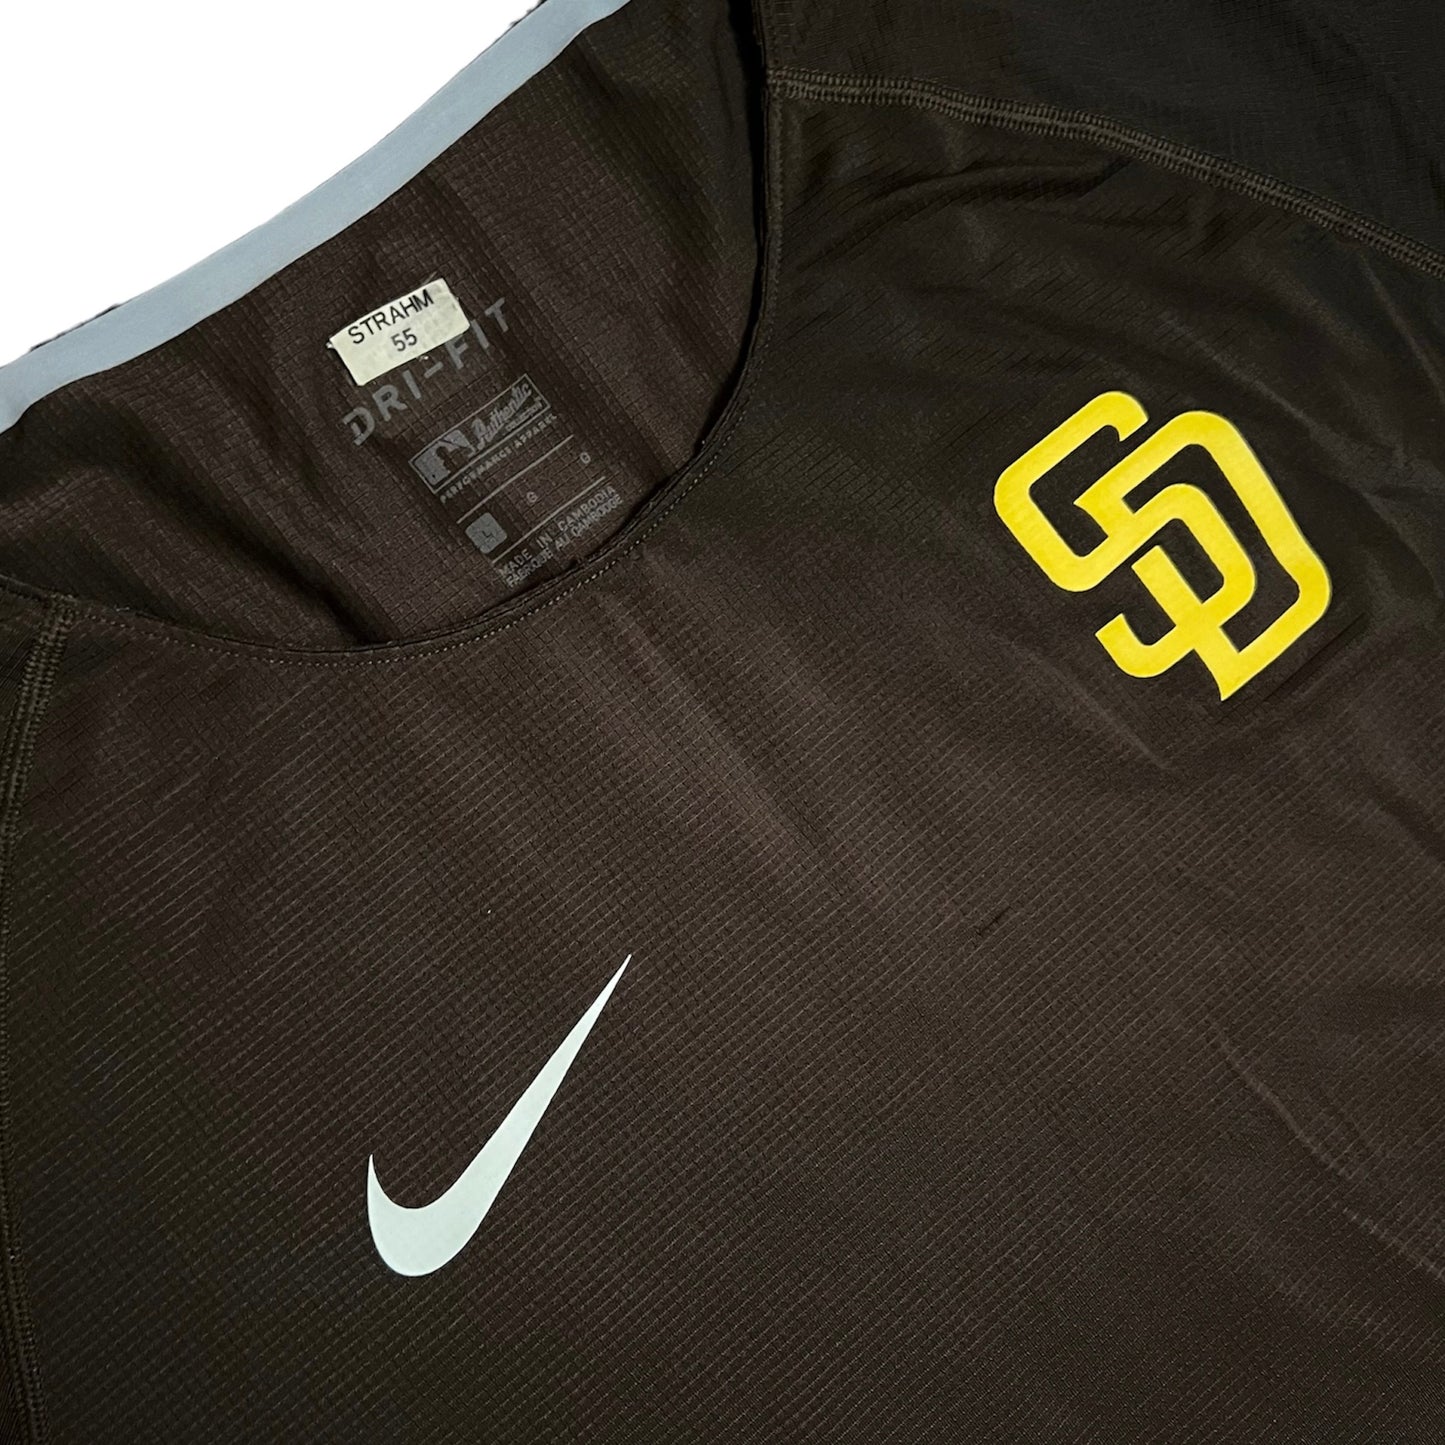 Matt Strahm San Diego Padres Nike Dri Fit Shirt - L